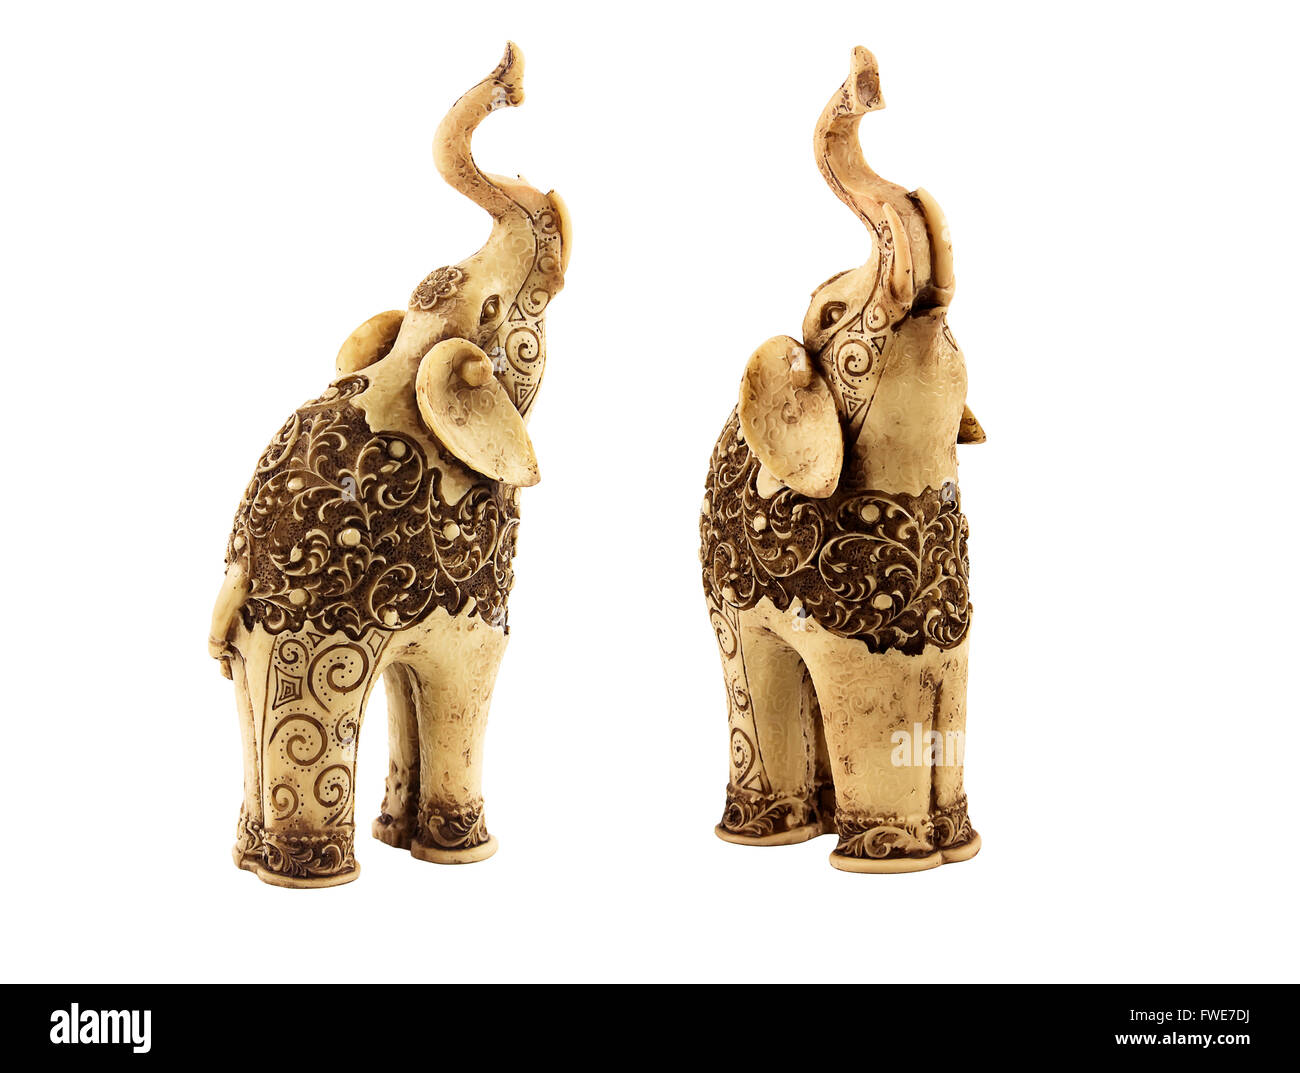 Deux statuettes d'éléphants indiens sculptés avec des motifs très belle. Un seul éléphant ressemble presque en face, un autre un peu b Banque D'Images